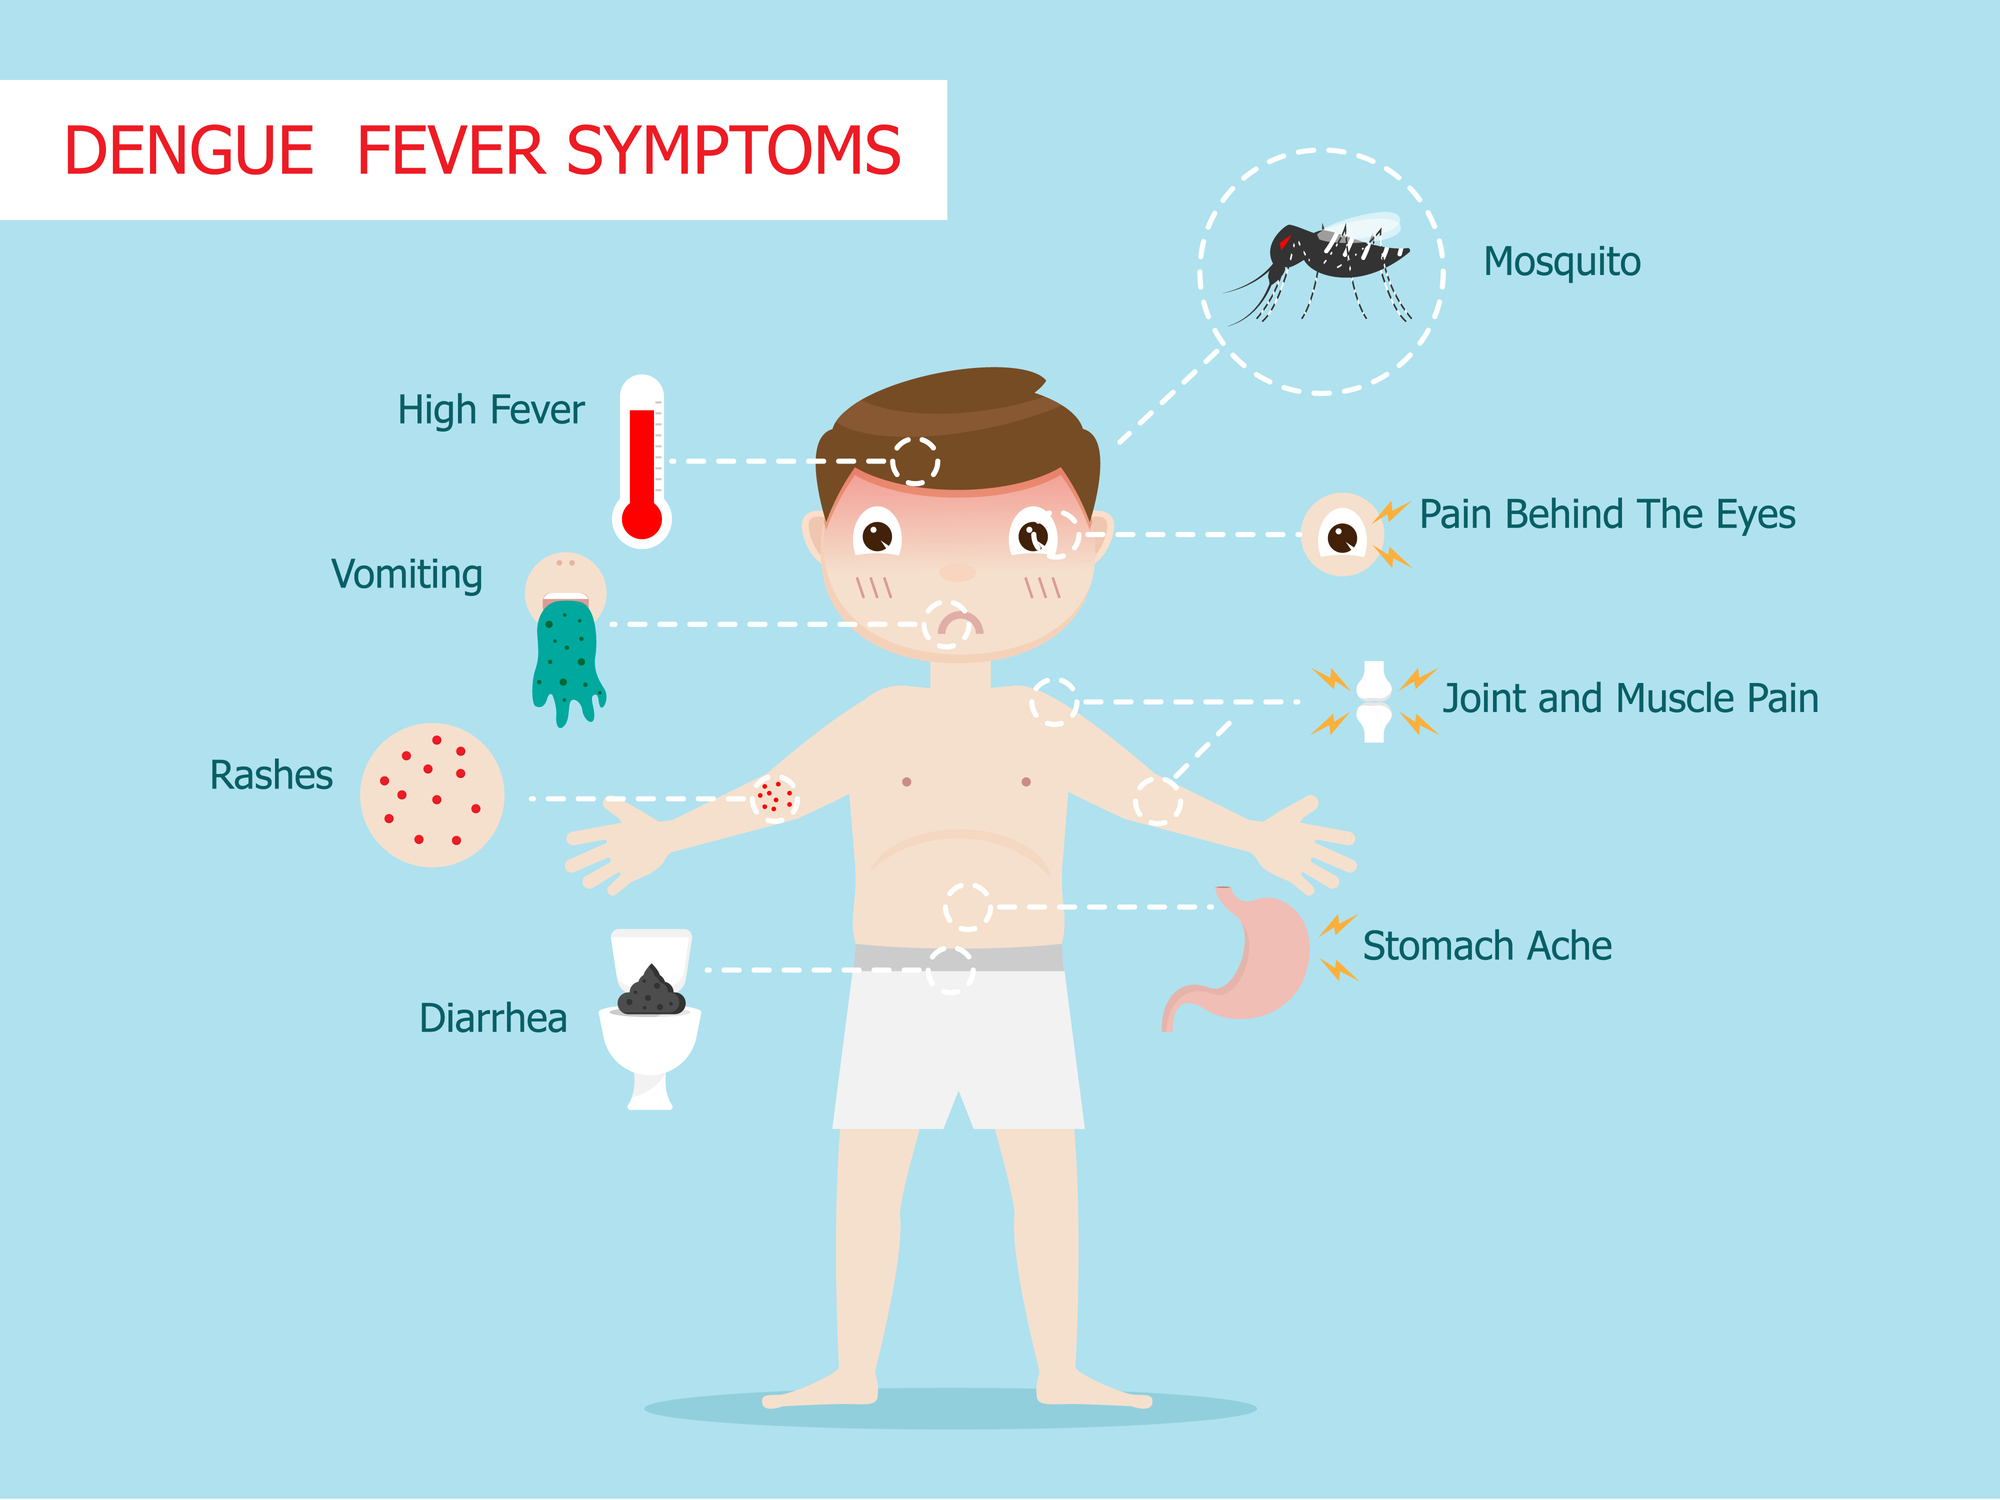 Symptoms of dengue fever